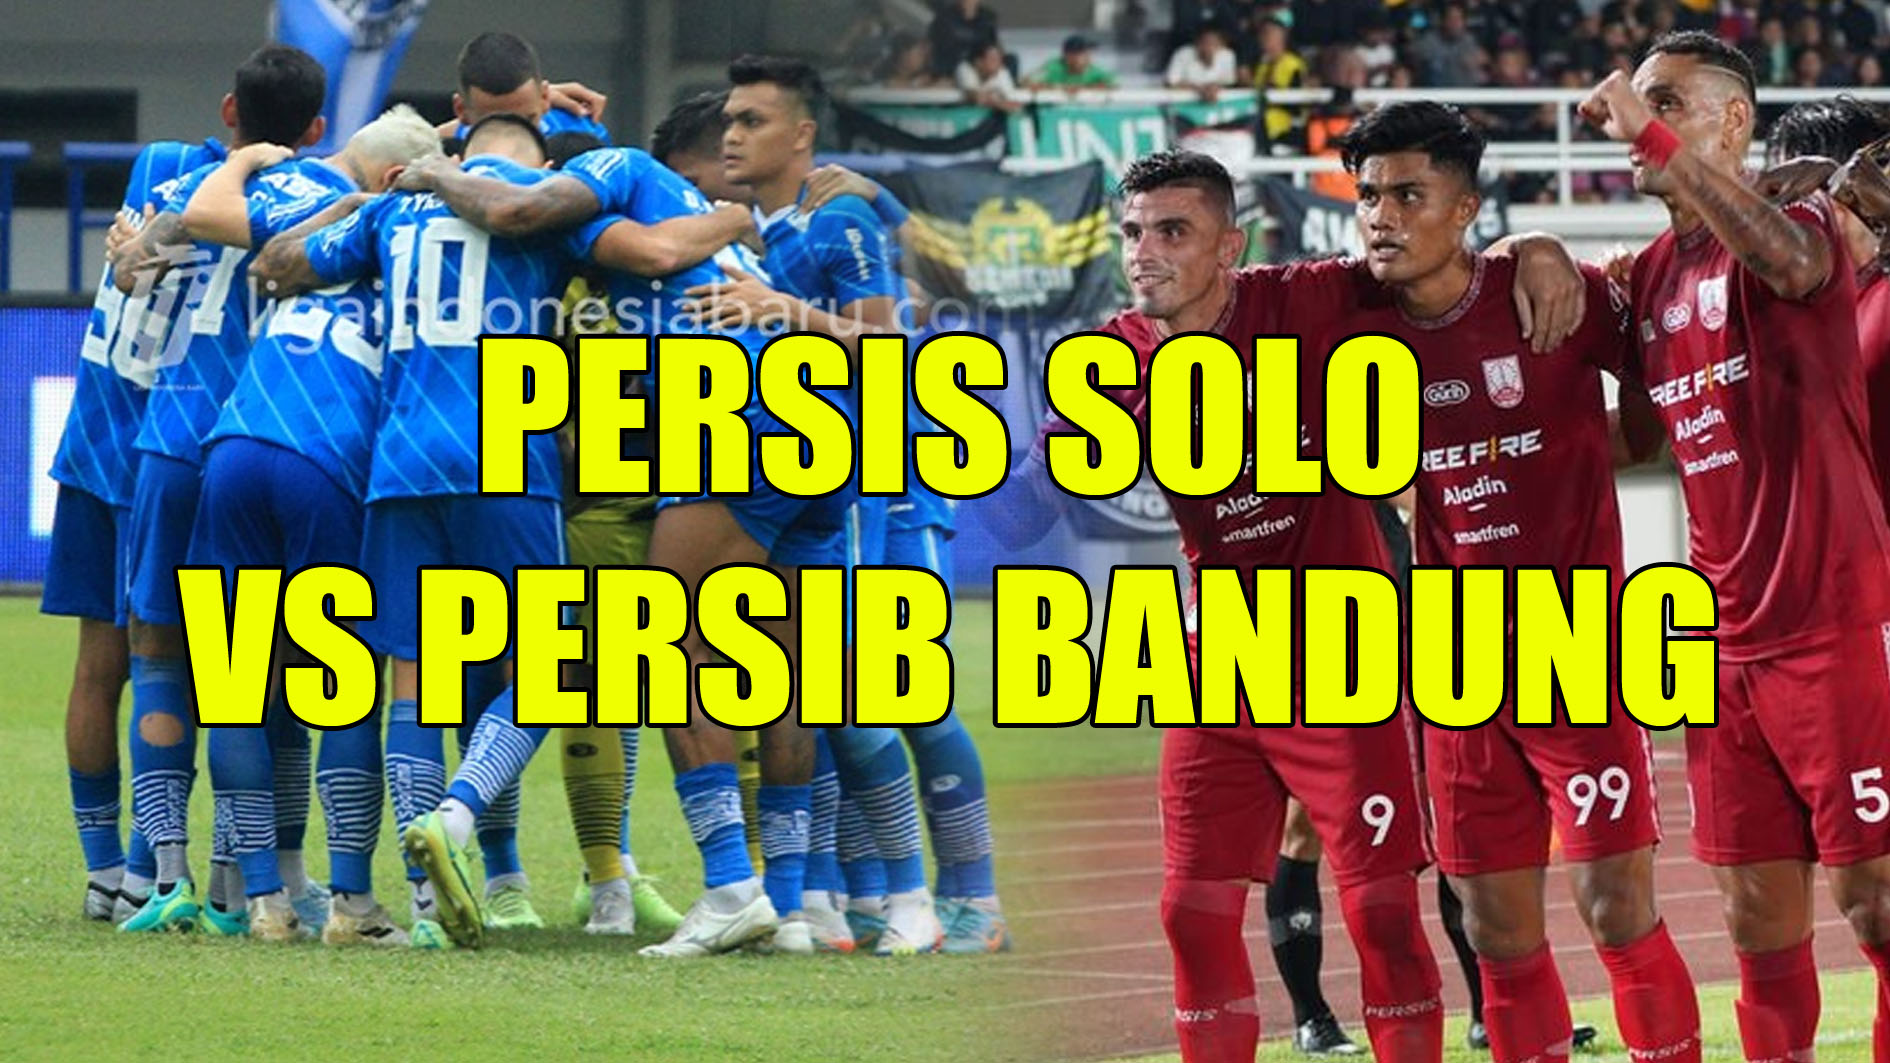 Jelang Persis Solo vs Persib Bandung, Bojan Hodak: Berikan Penampilan Terbaik